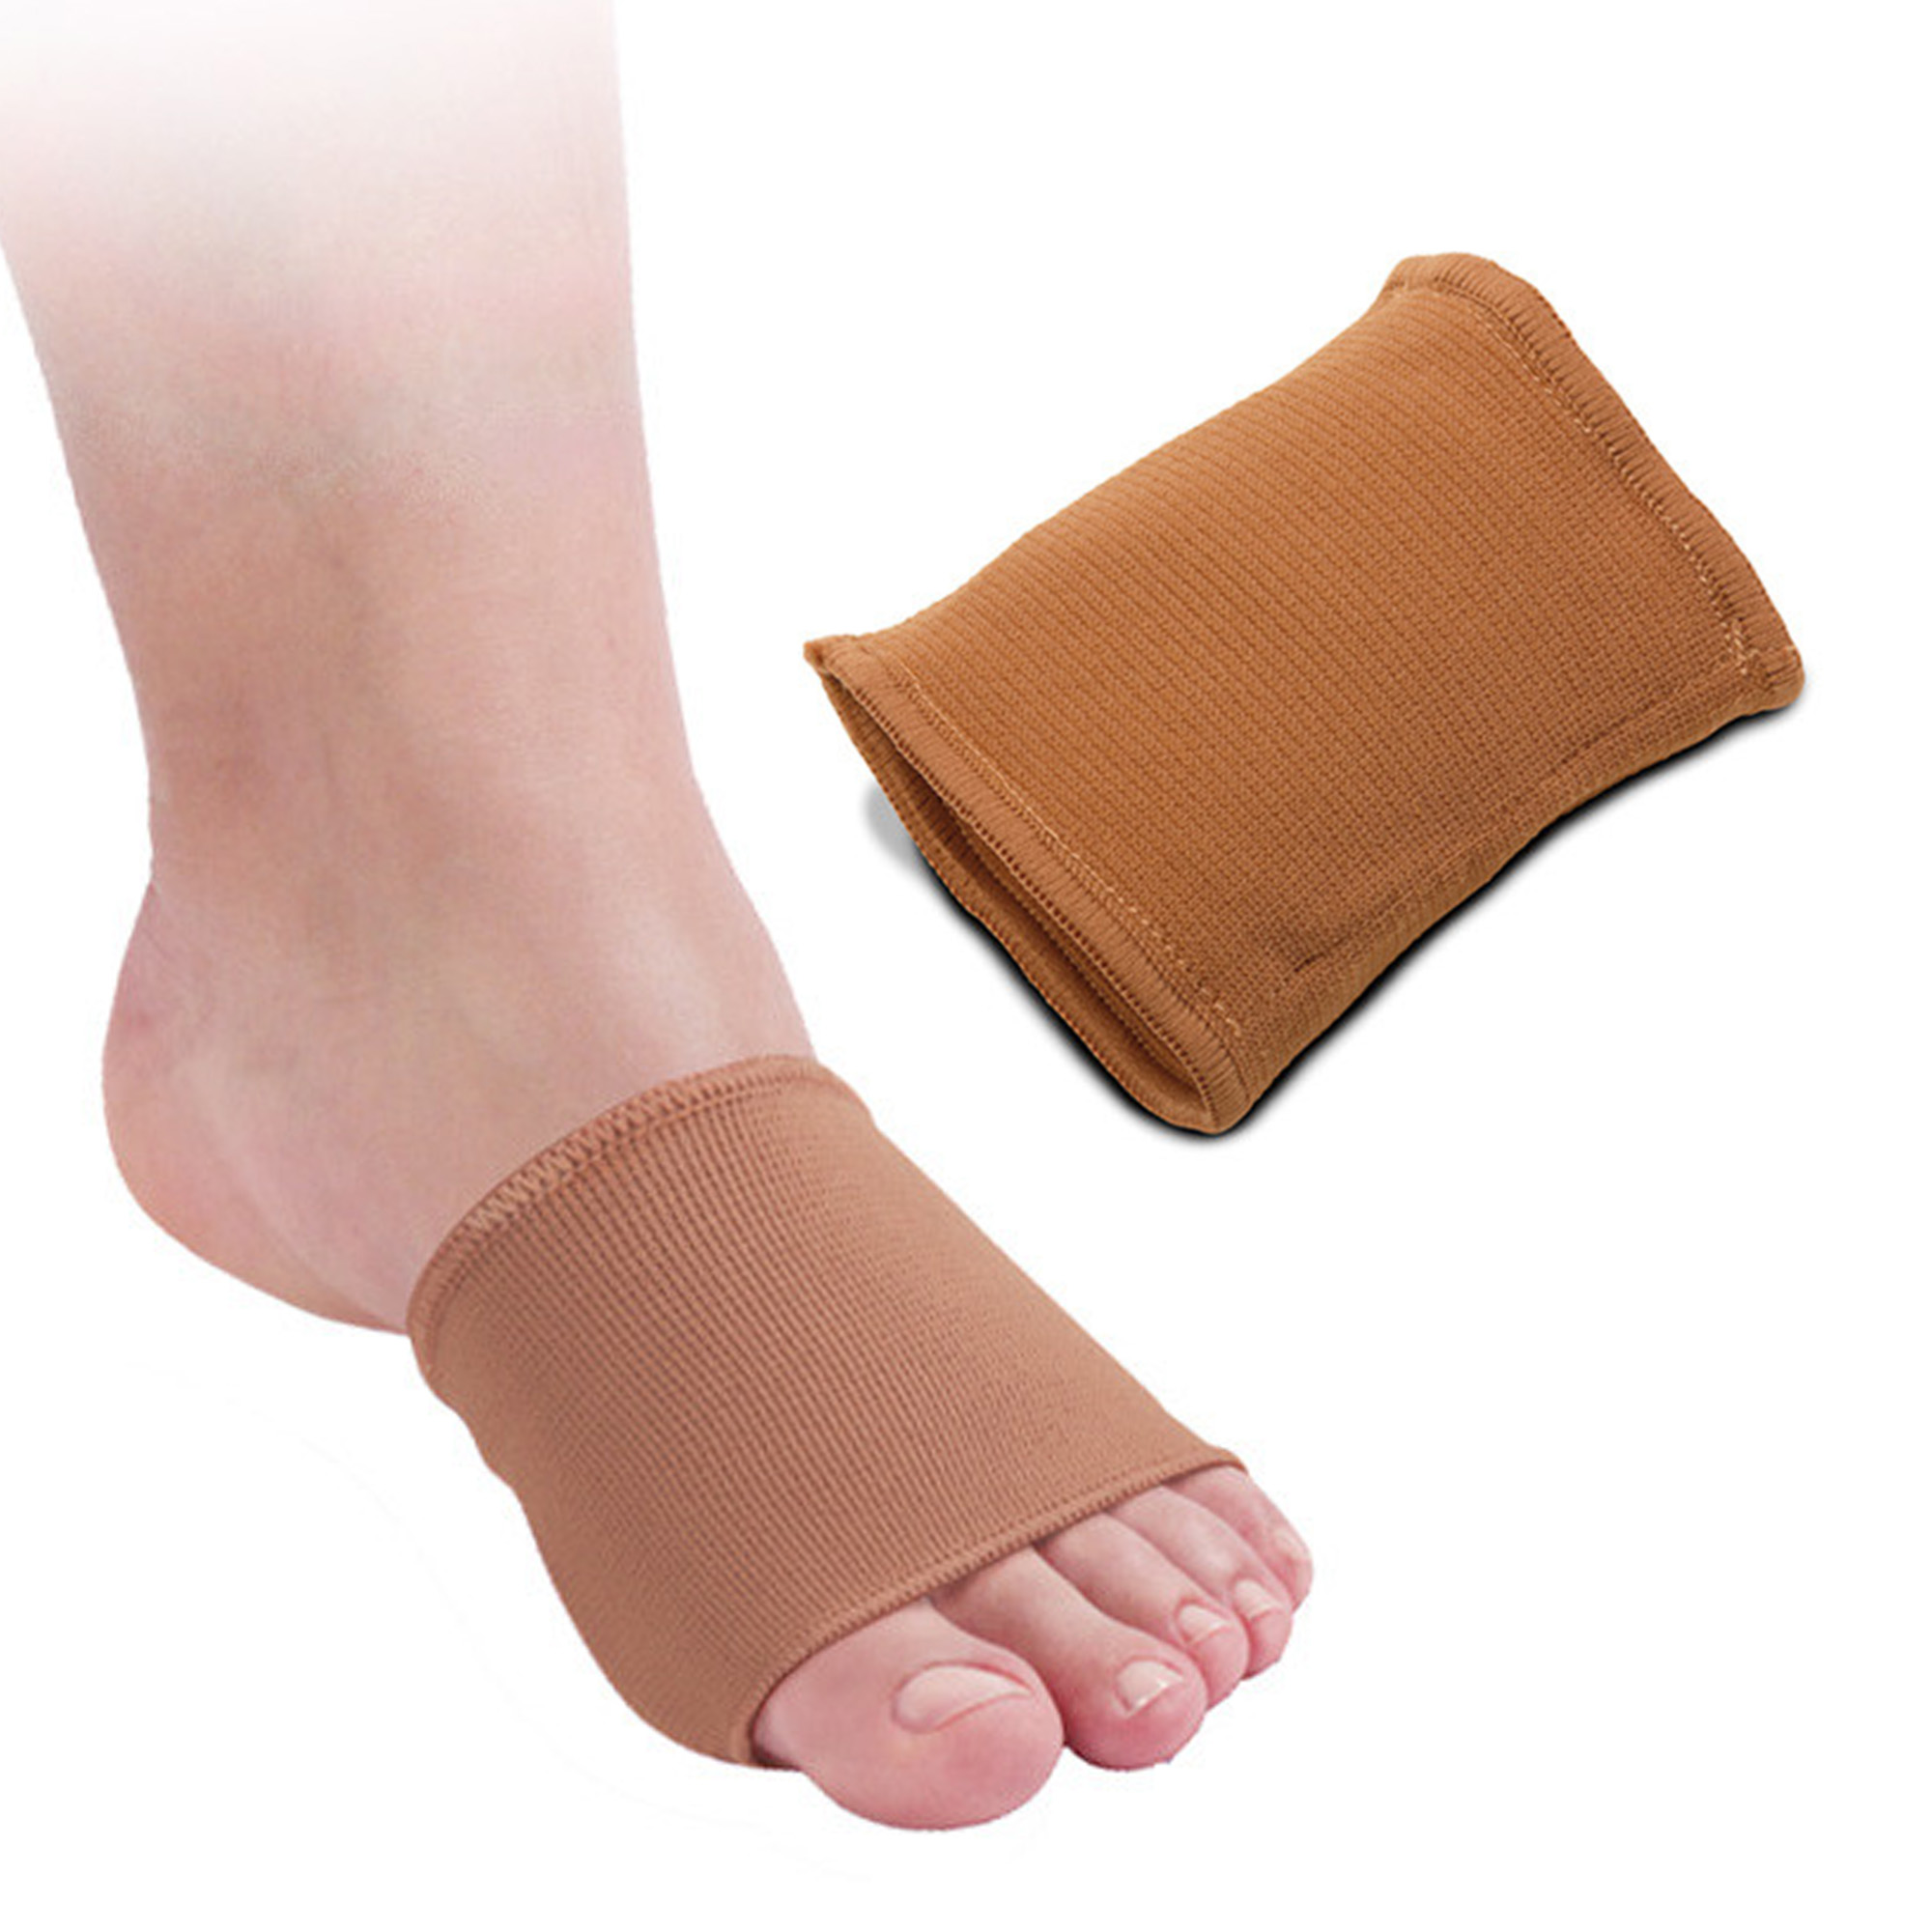 Metatarsalband für Füße aus Stoff und Tecniwork Polymer Gel